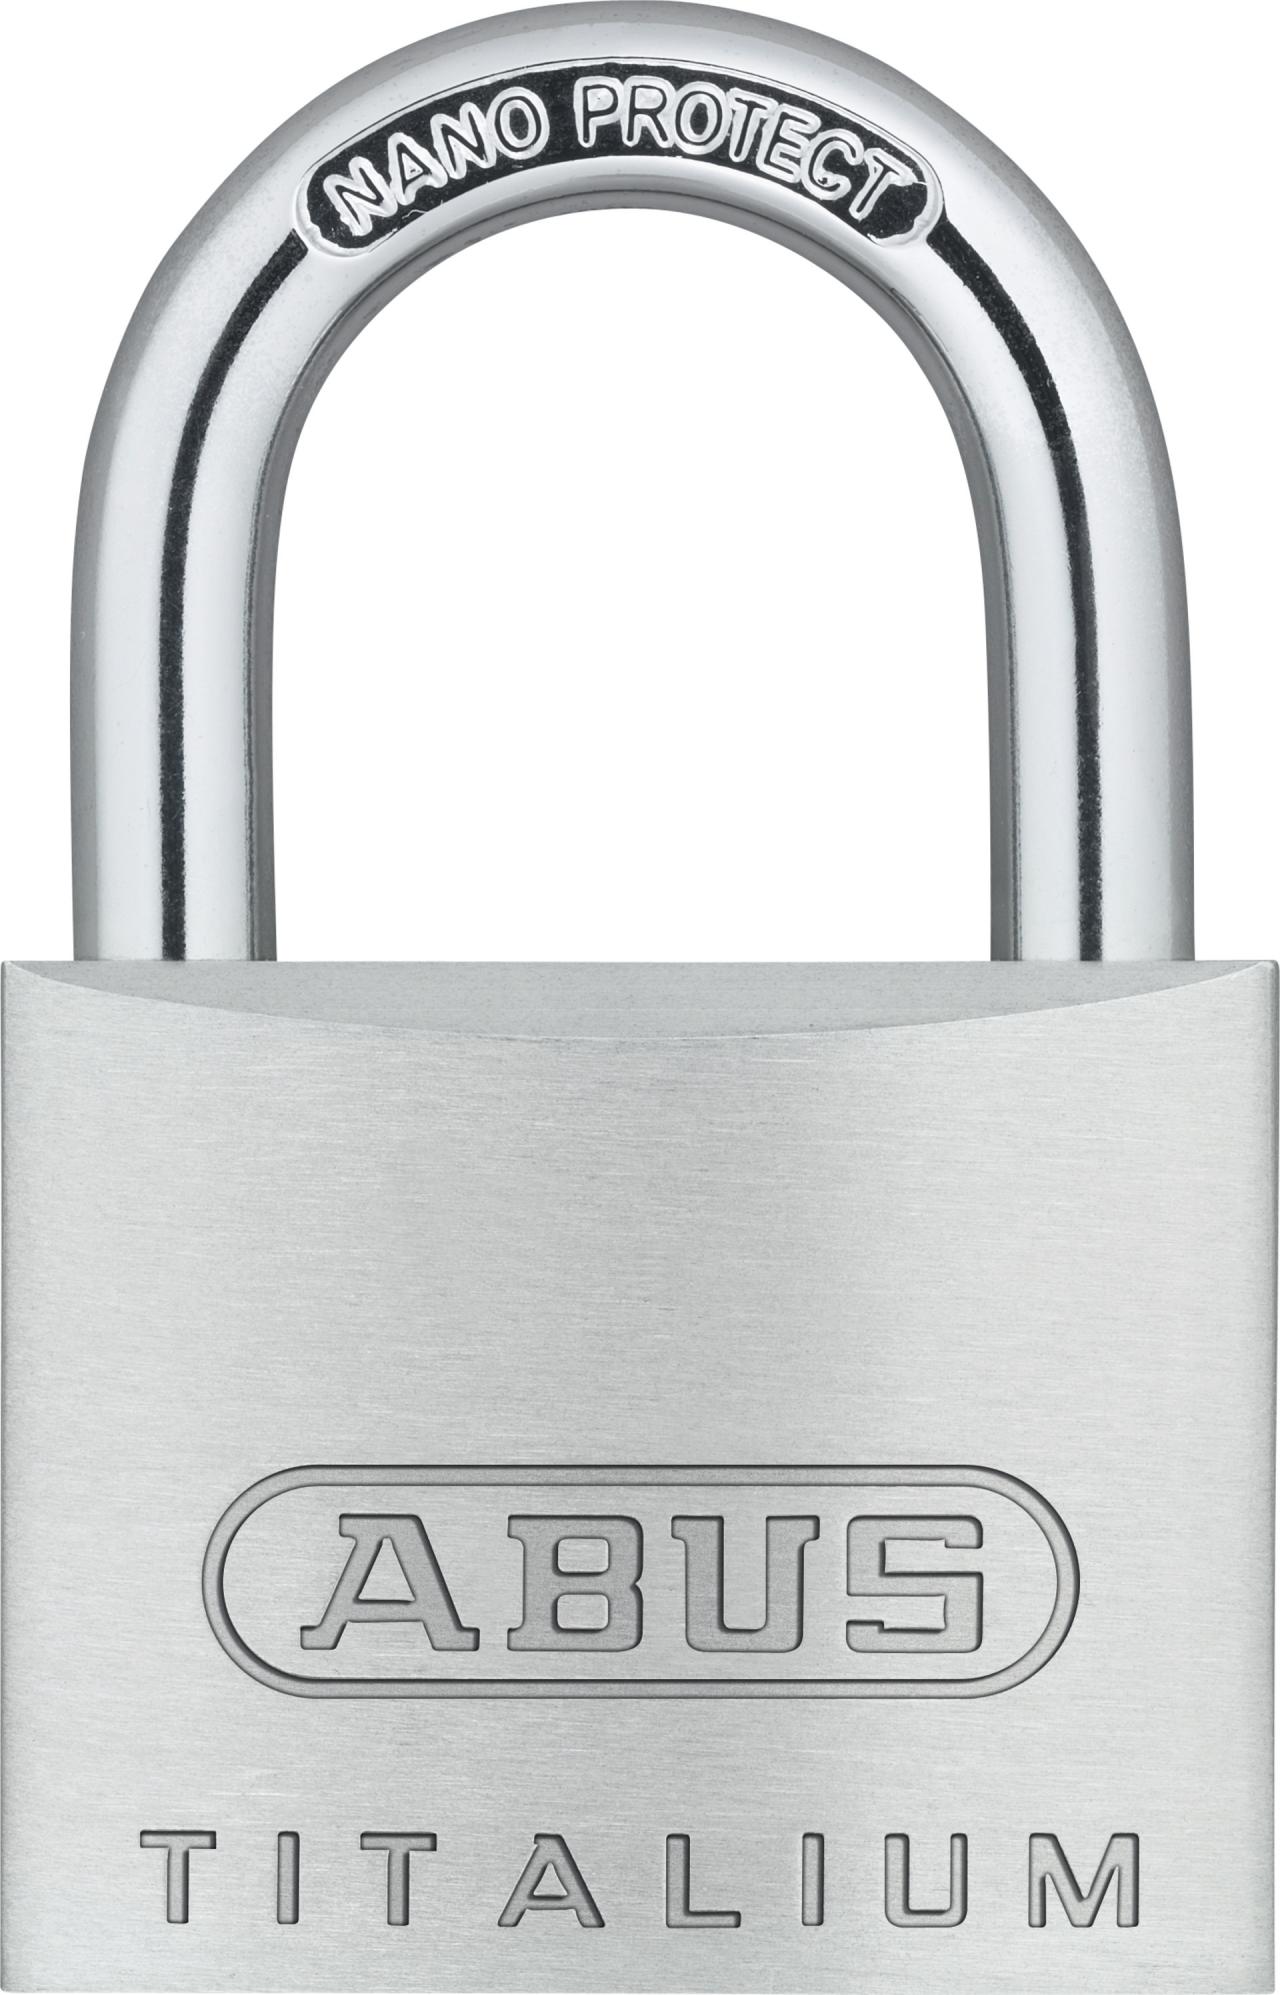 ABUS padlock Titalium 64TI/40